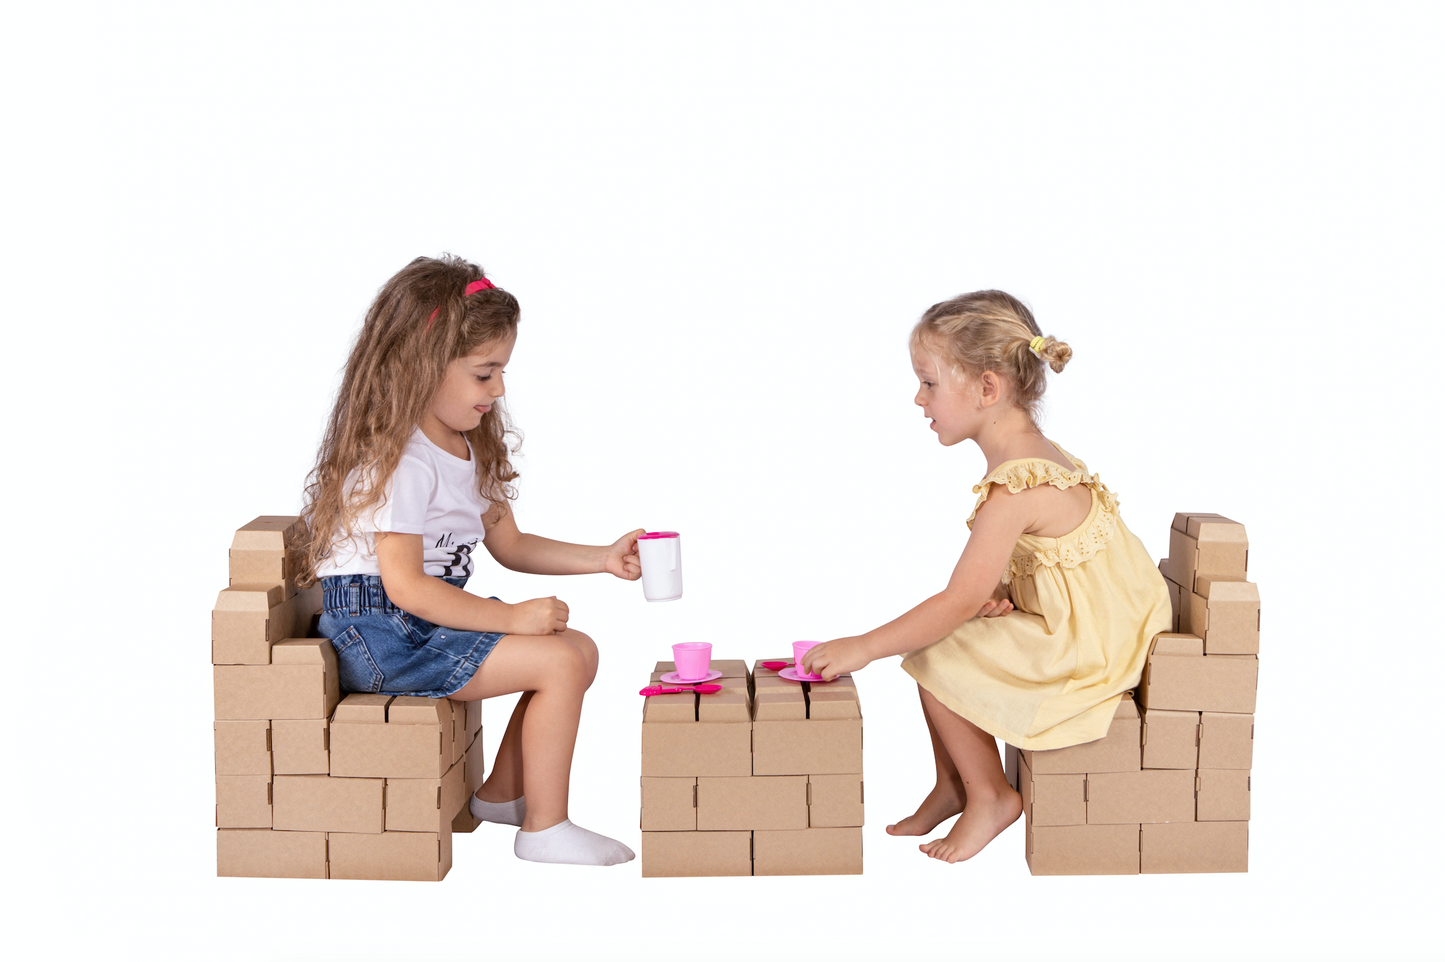 Rikbits cardboard interlocking bricks (55 Pieces) – Brown